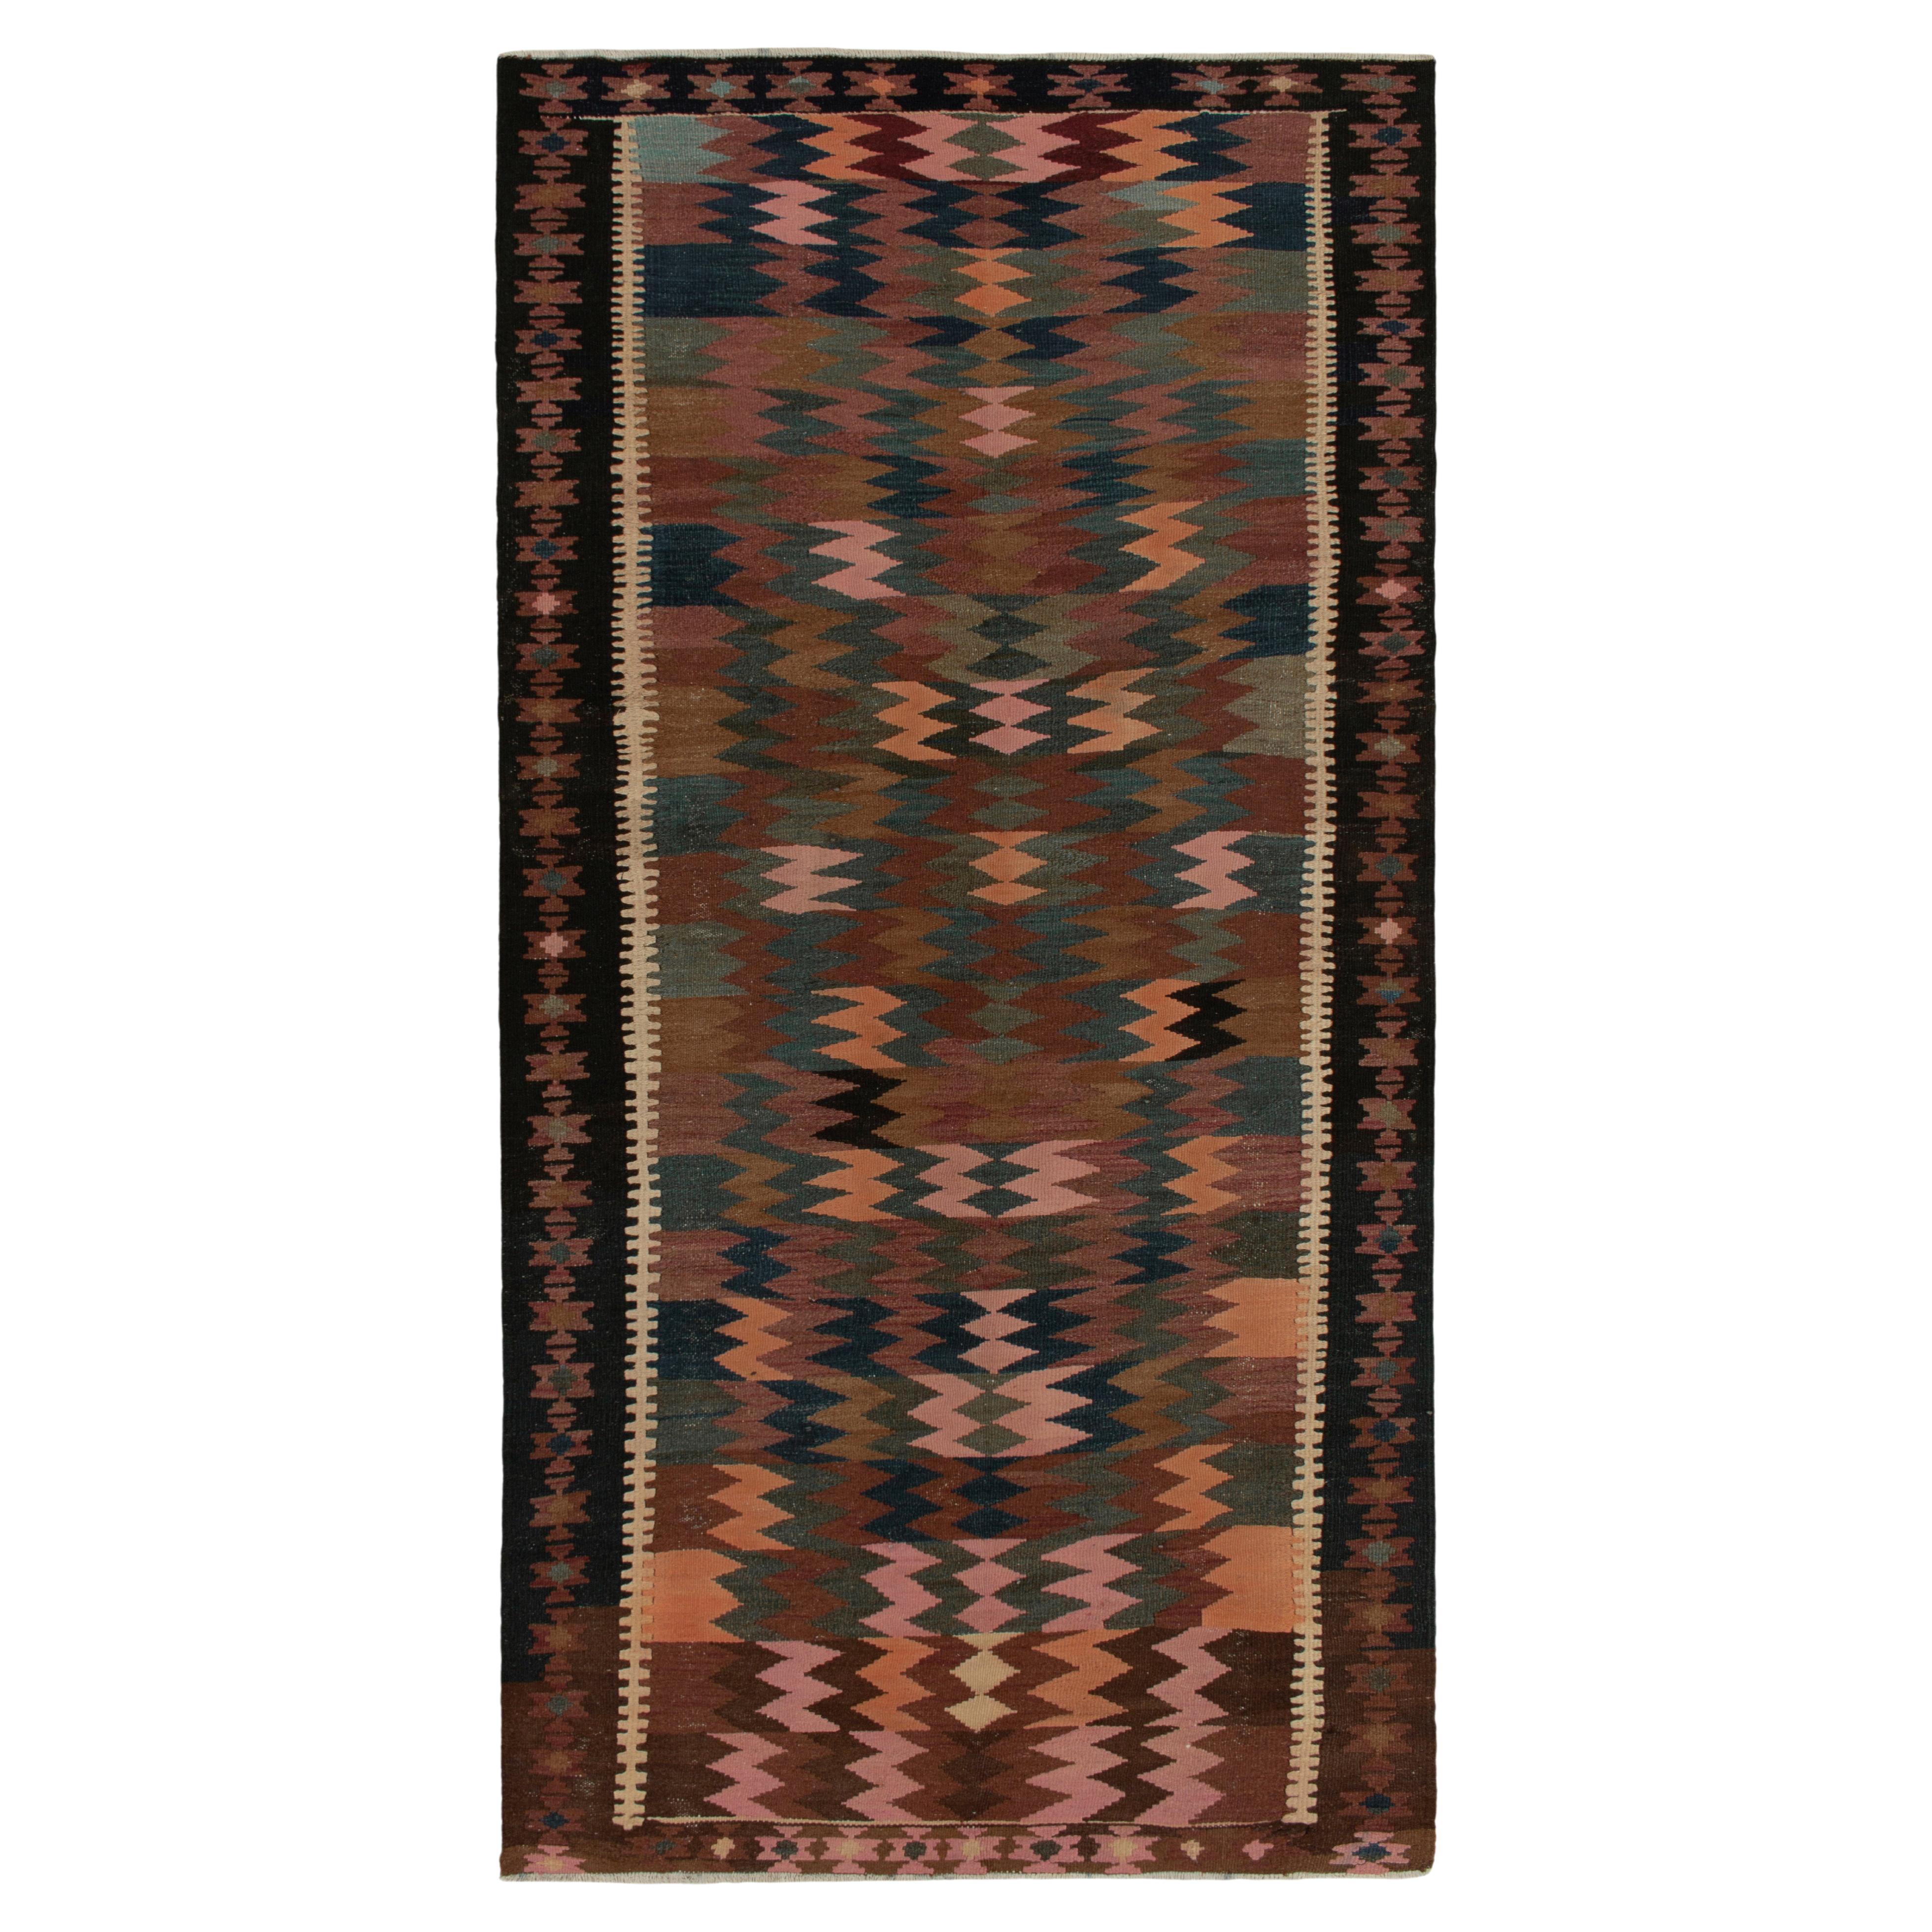 Vintage Persian Kilim Rug in Beige-Brown Tribal Geometric Pattern by Rug & Kilim